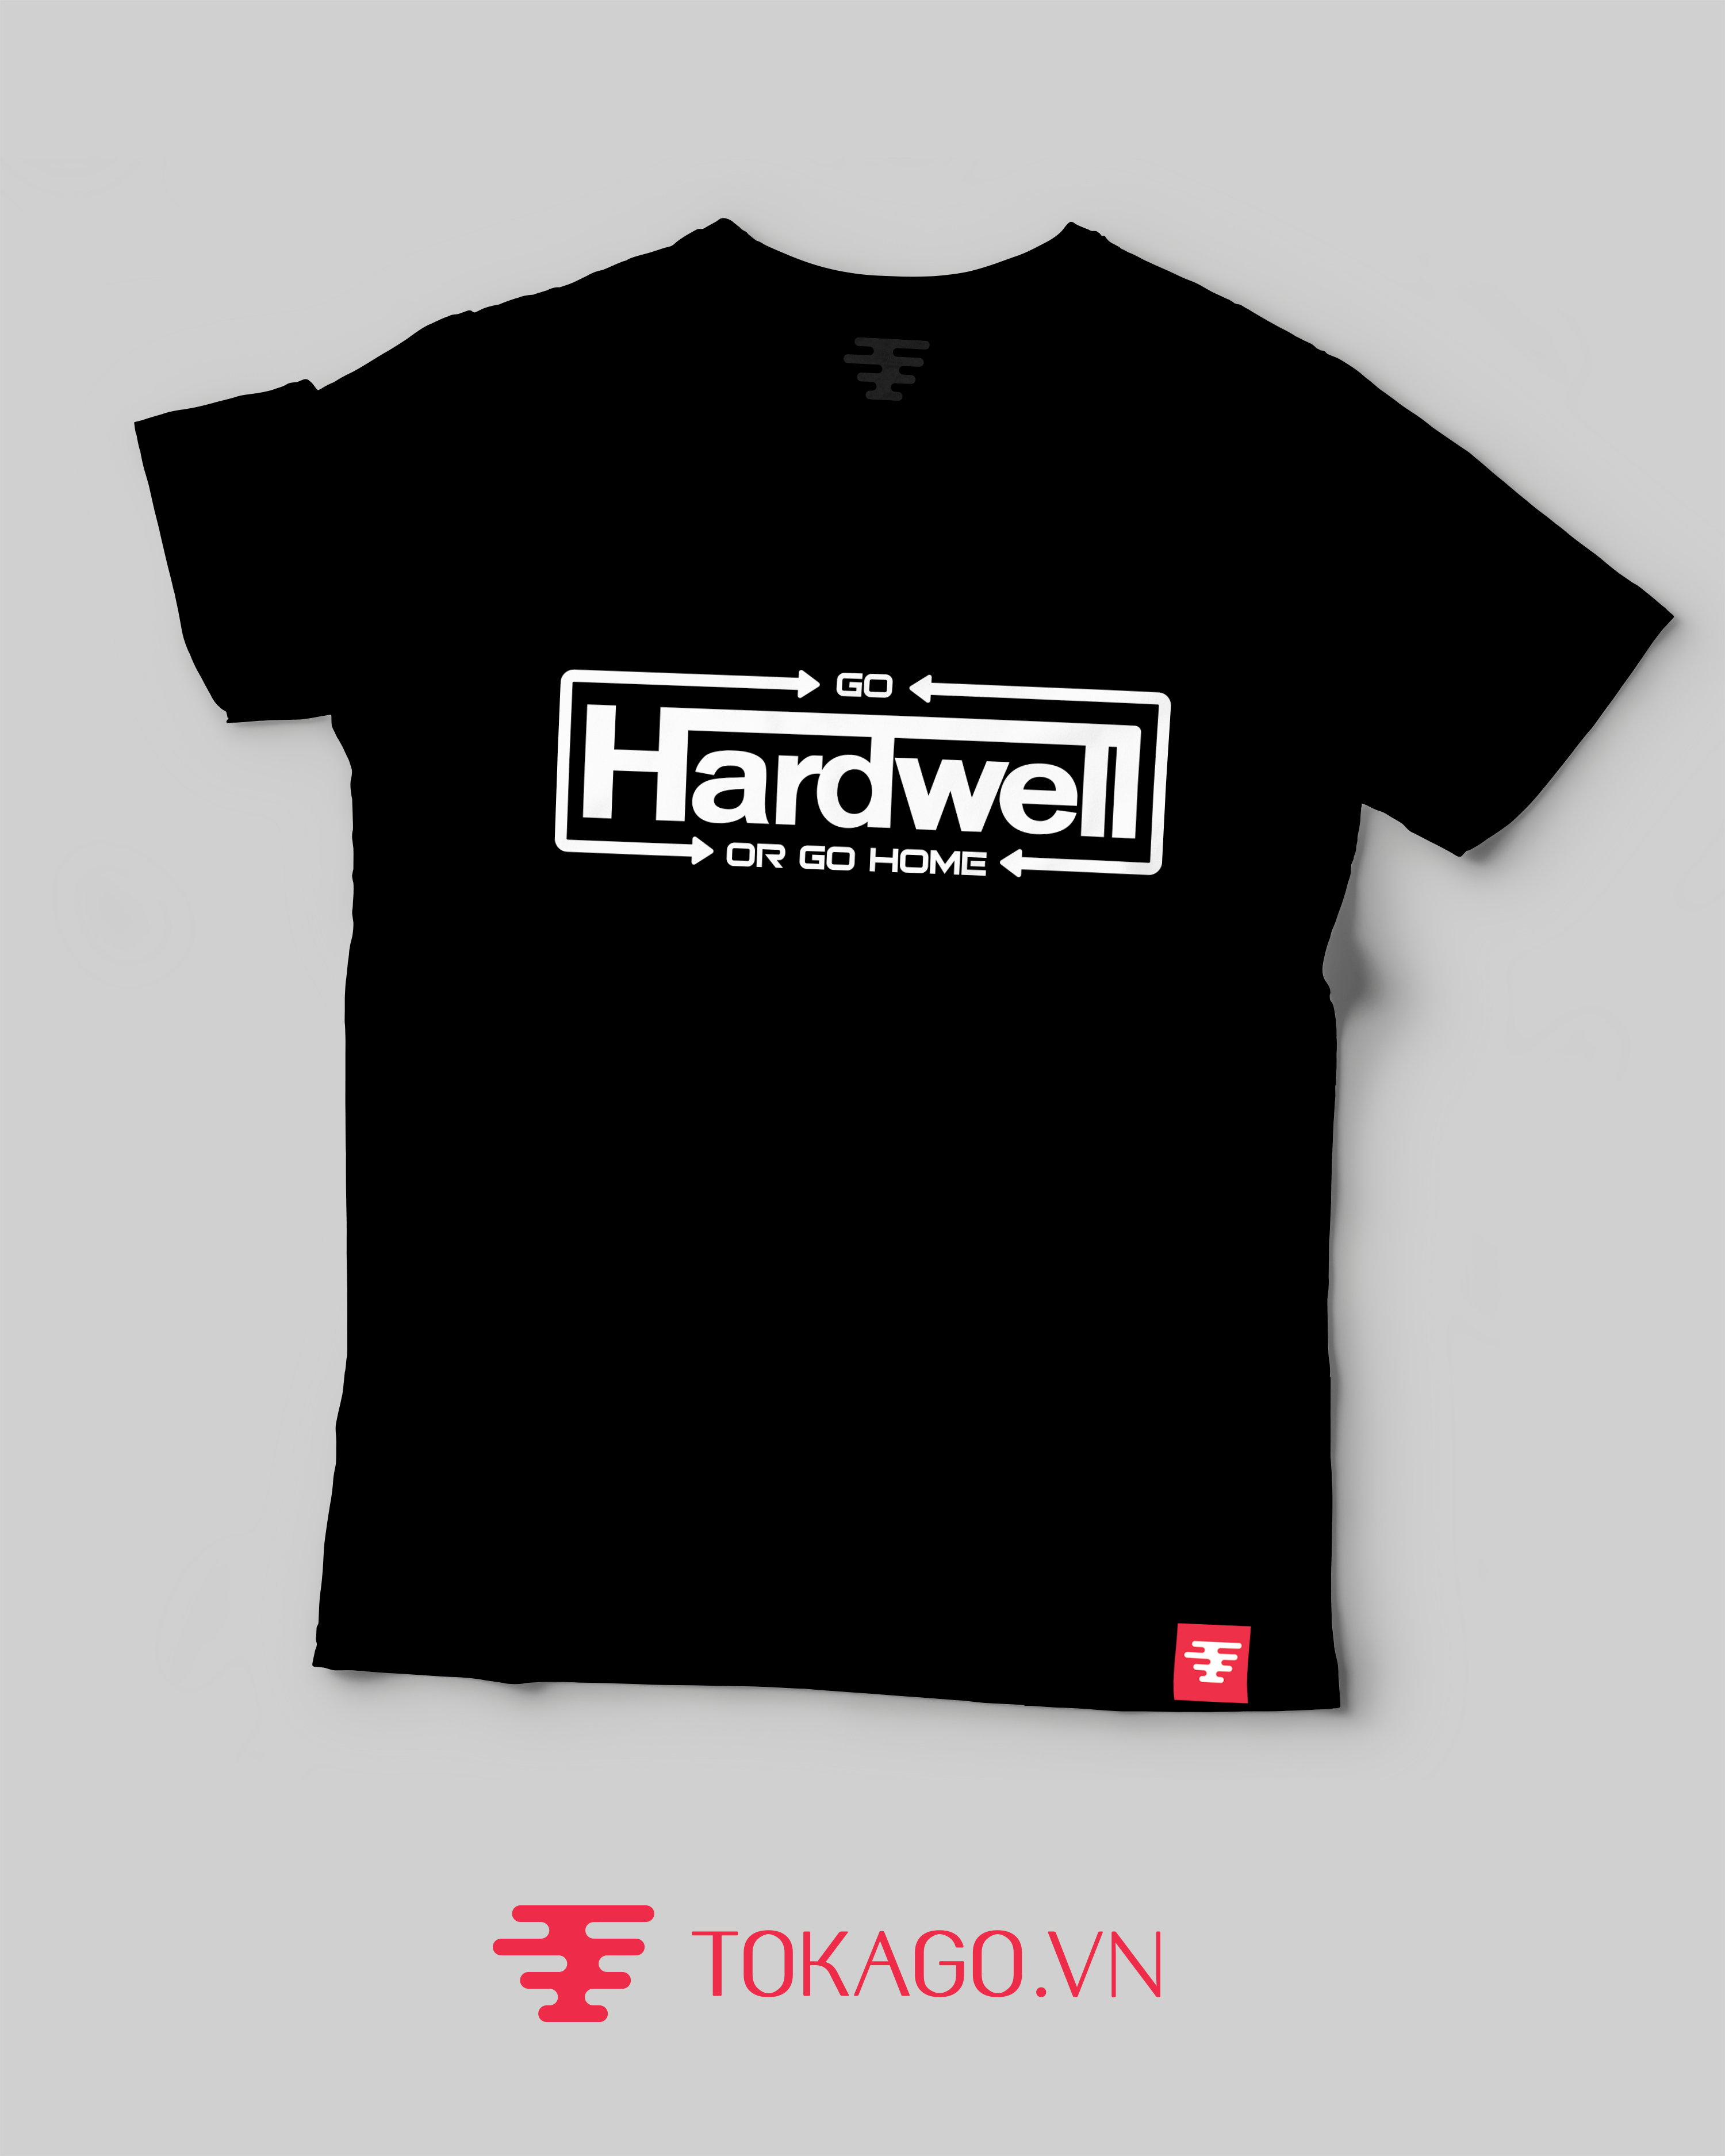 Hardwell mẫu 2